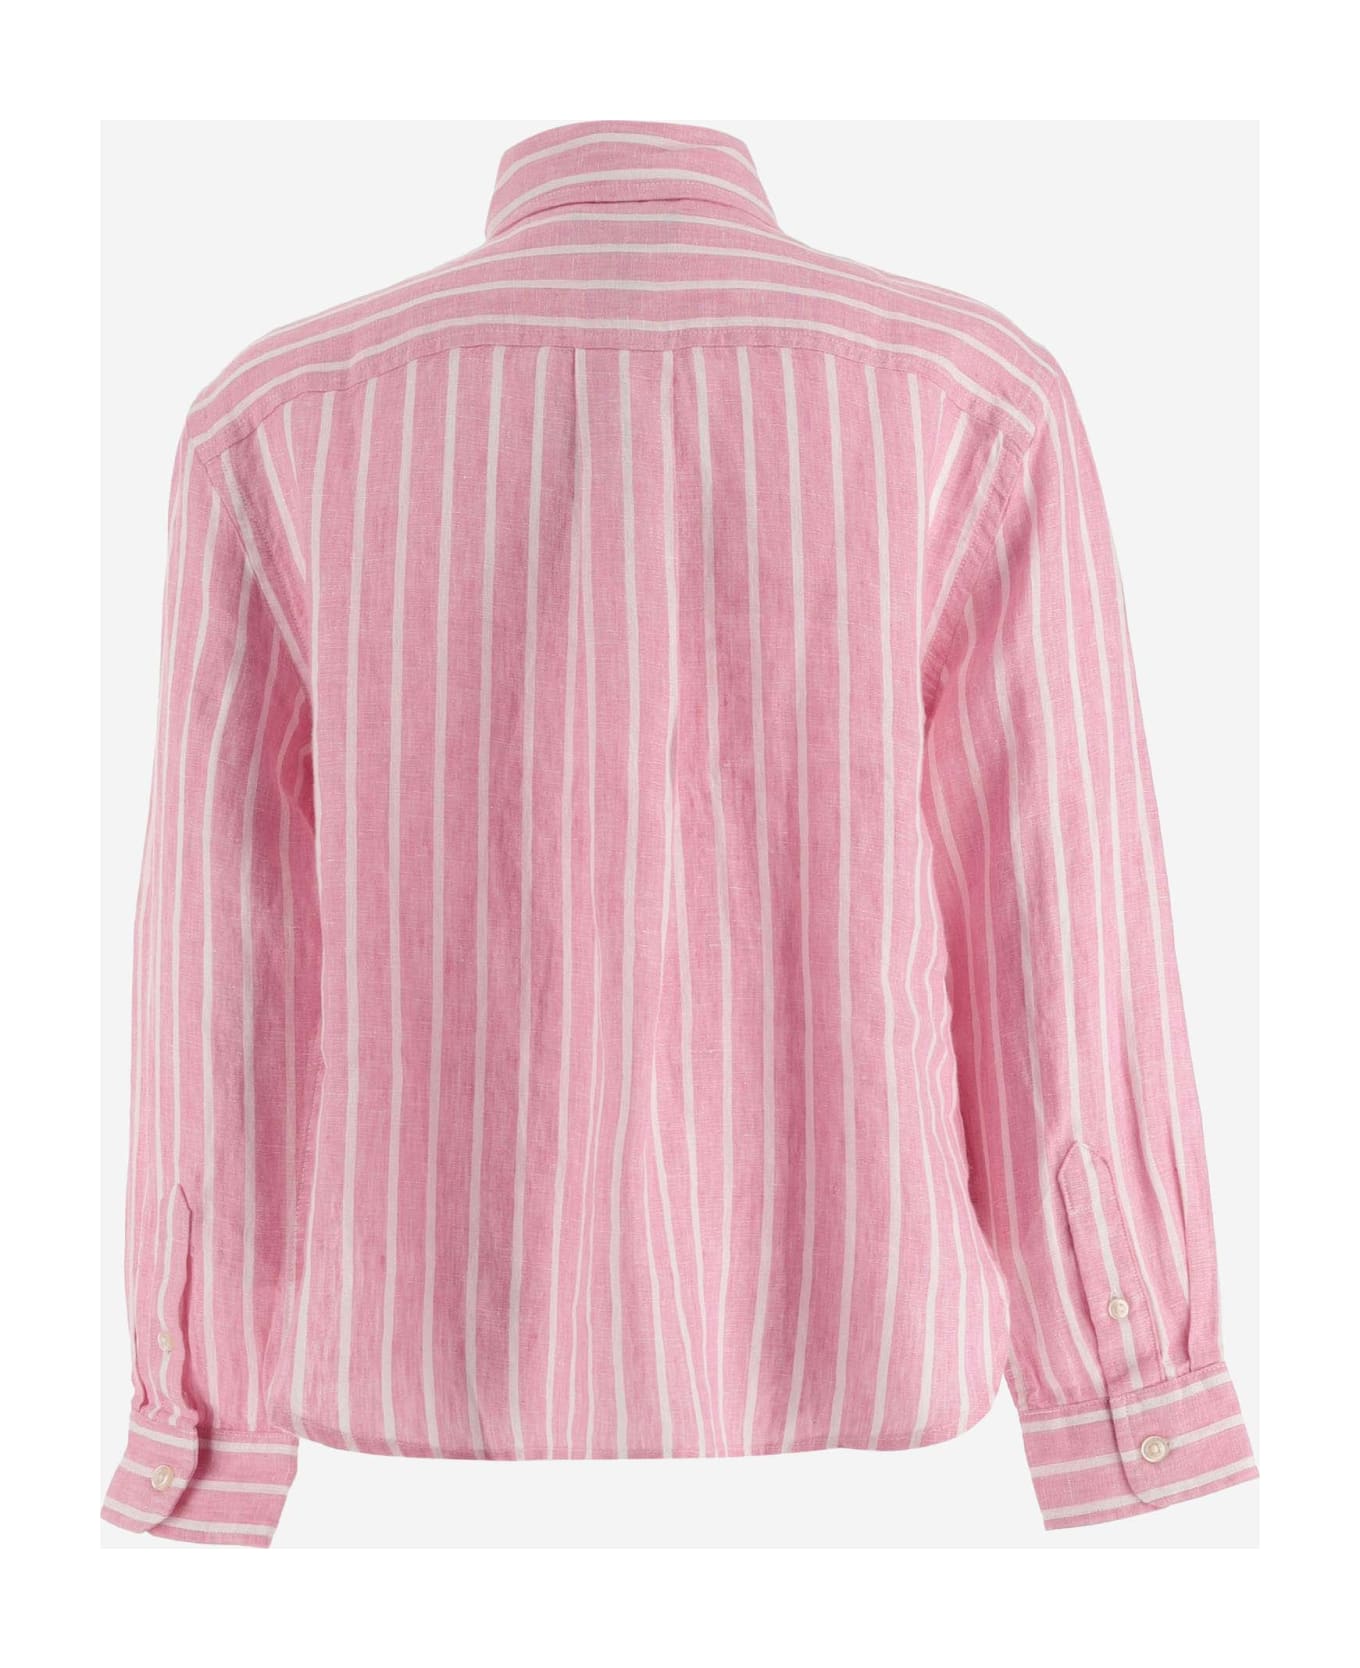 Ralph Lauren Linen Striped Shirt With Logo - Rosa